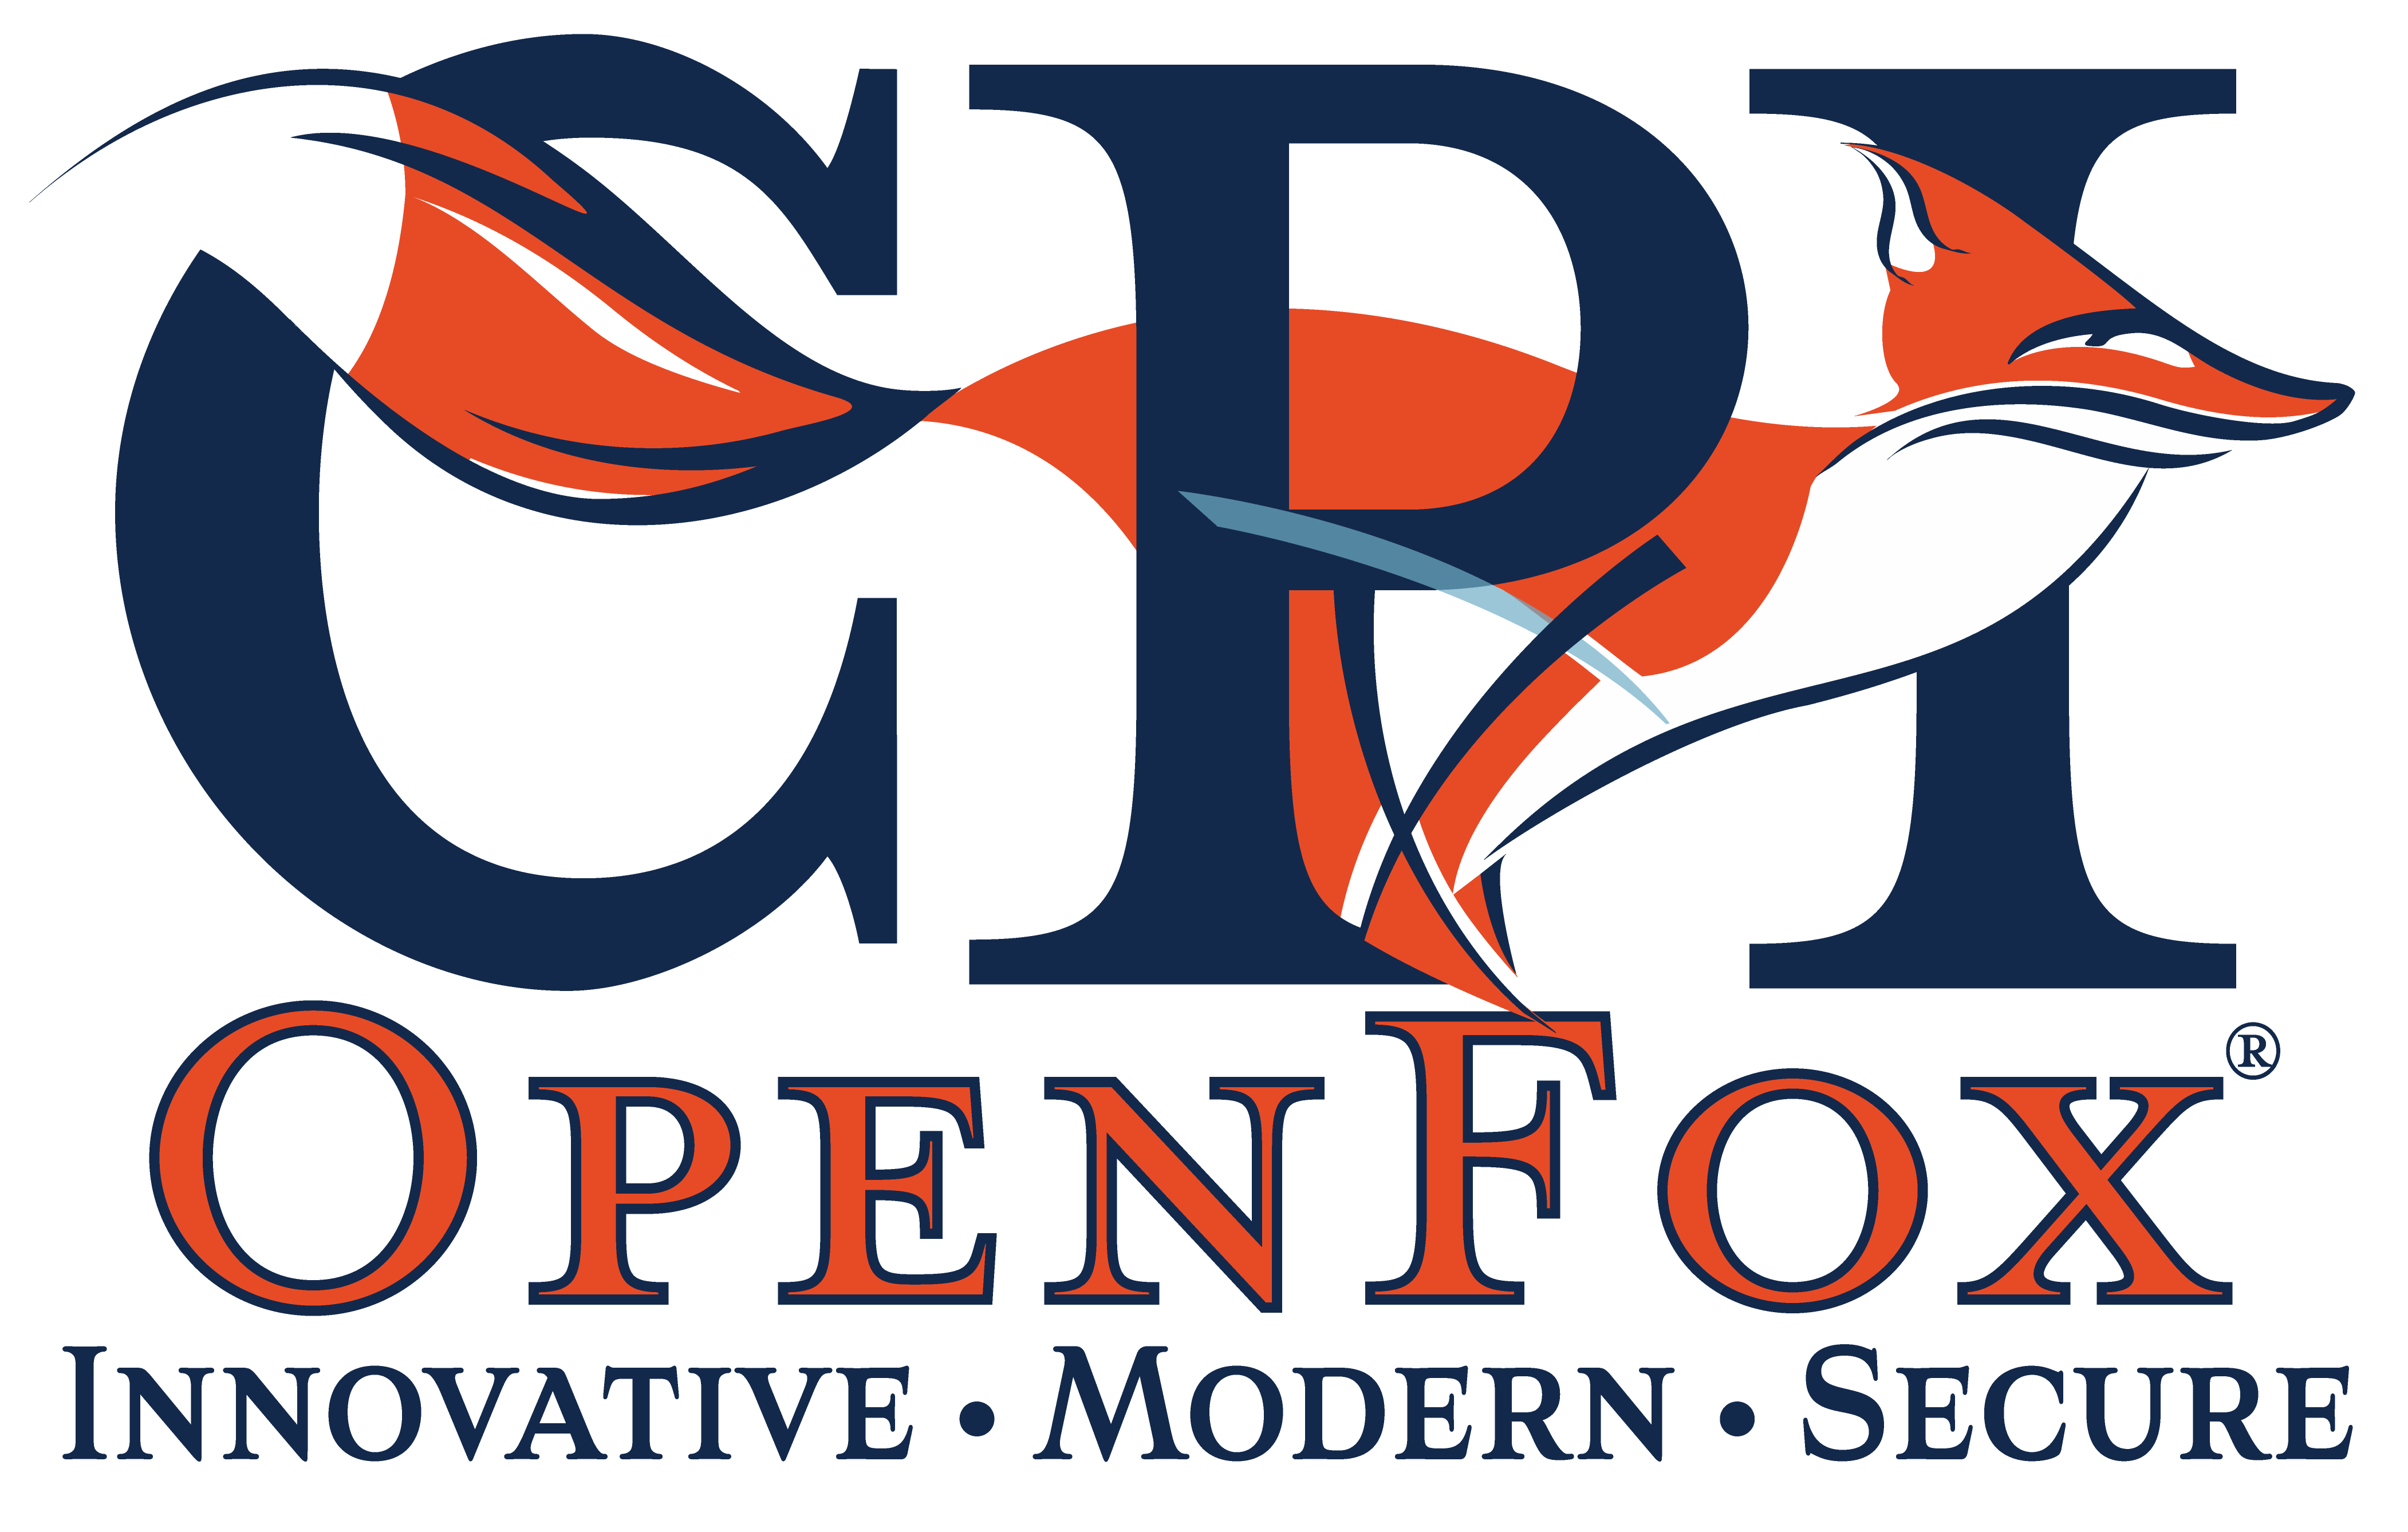 OpenFox CPI